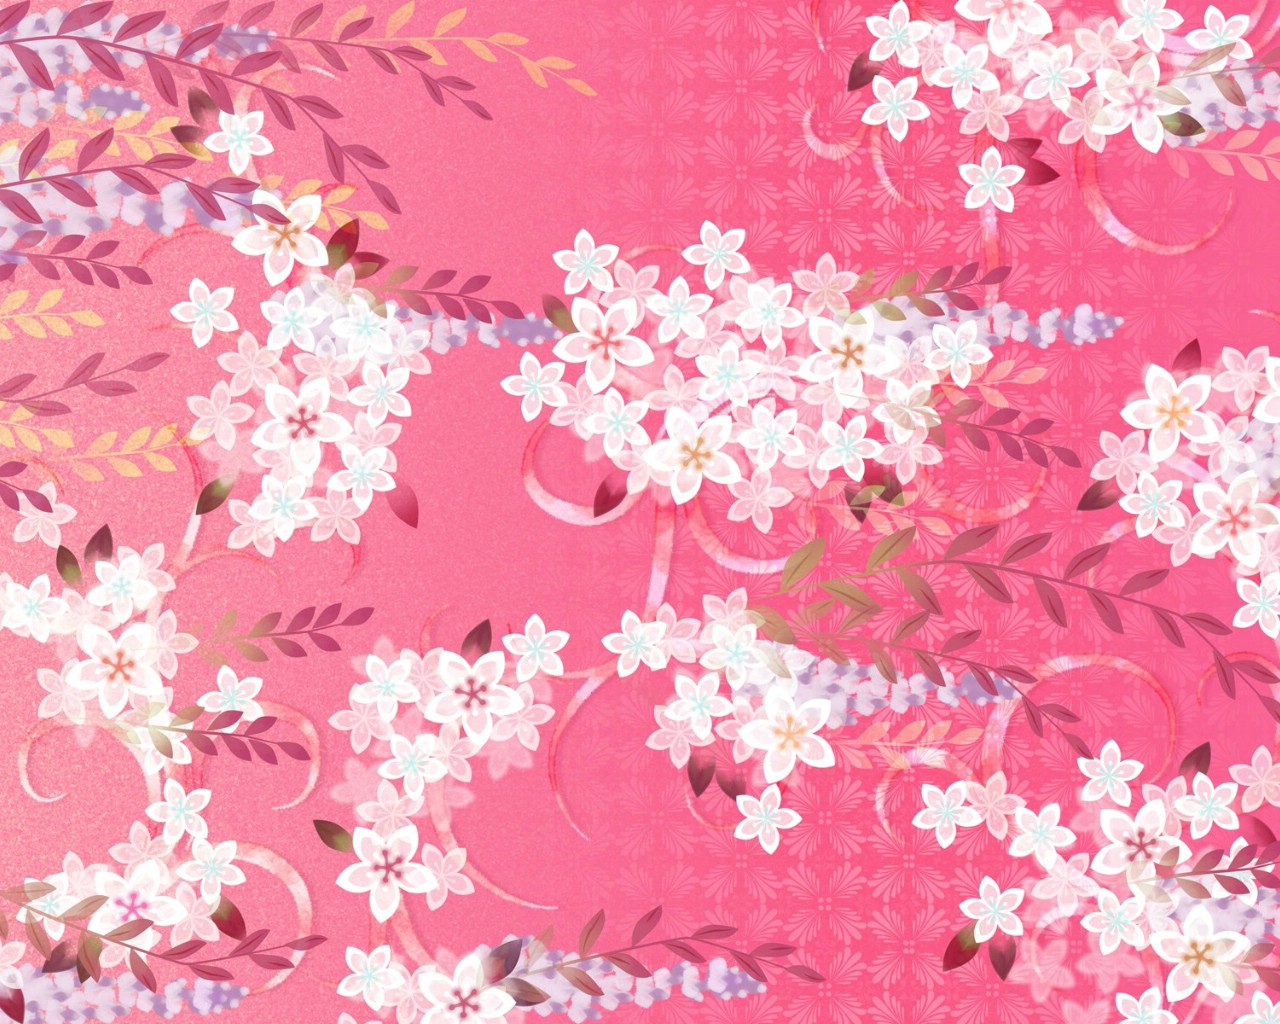 壁纸1280x1024 日本风格 甜美碎花图案图片壁纸 美丽碎花布 之 粉红甜美系壁纸 美丽碎花布 之 粉红甜美系图片 美丽碎花布 之 粉红甜美系素材 花卉壁纸 花卉图库 花卉图片素材桌面壁纸